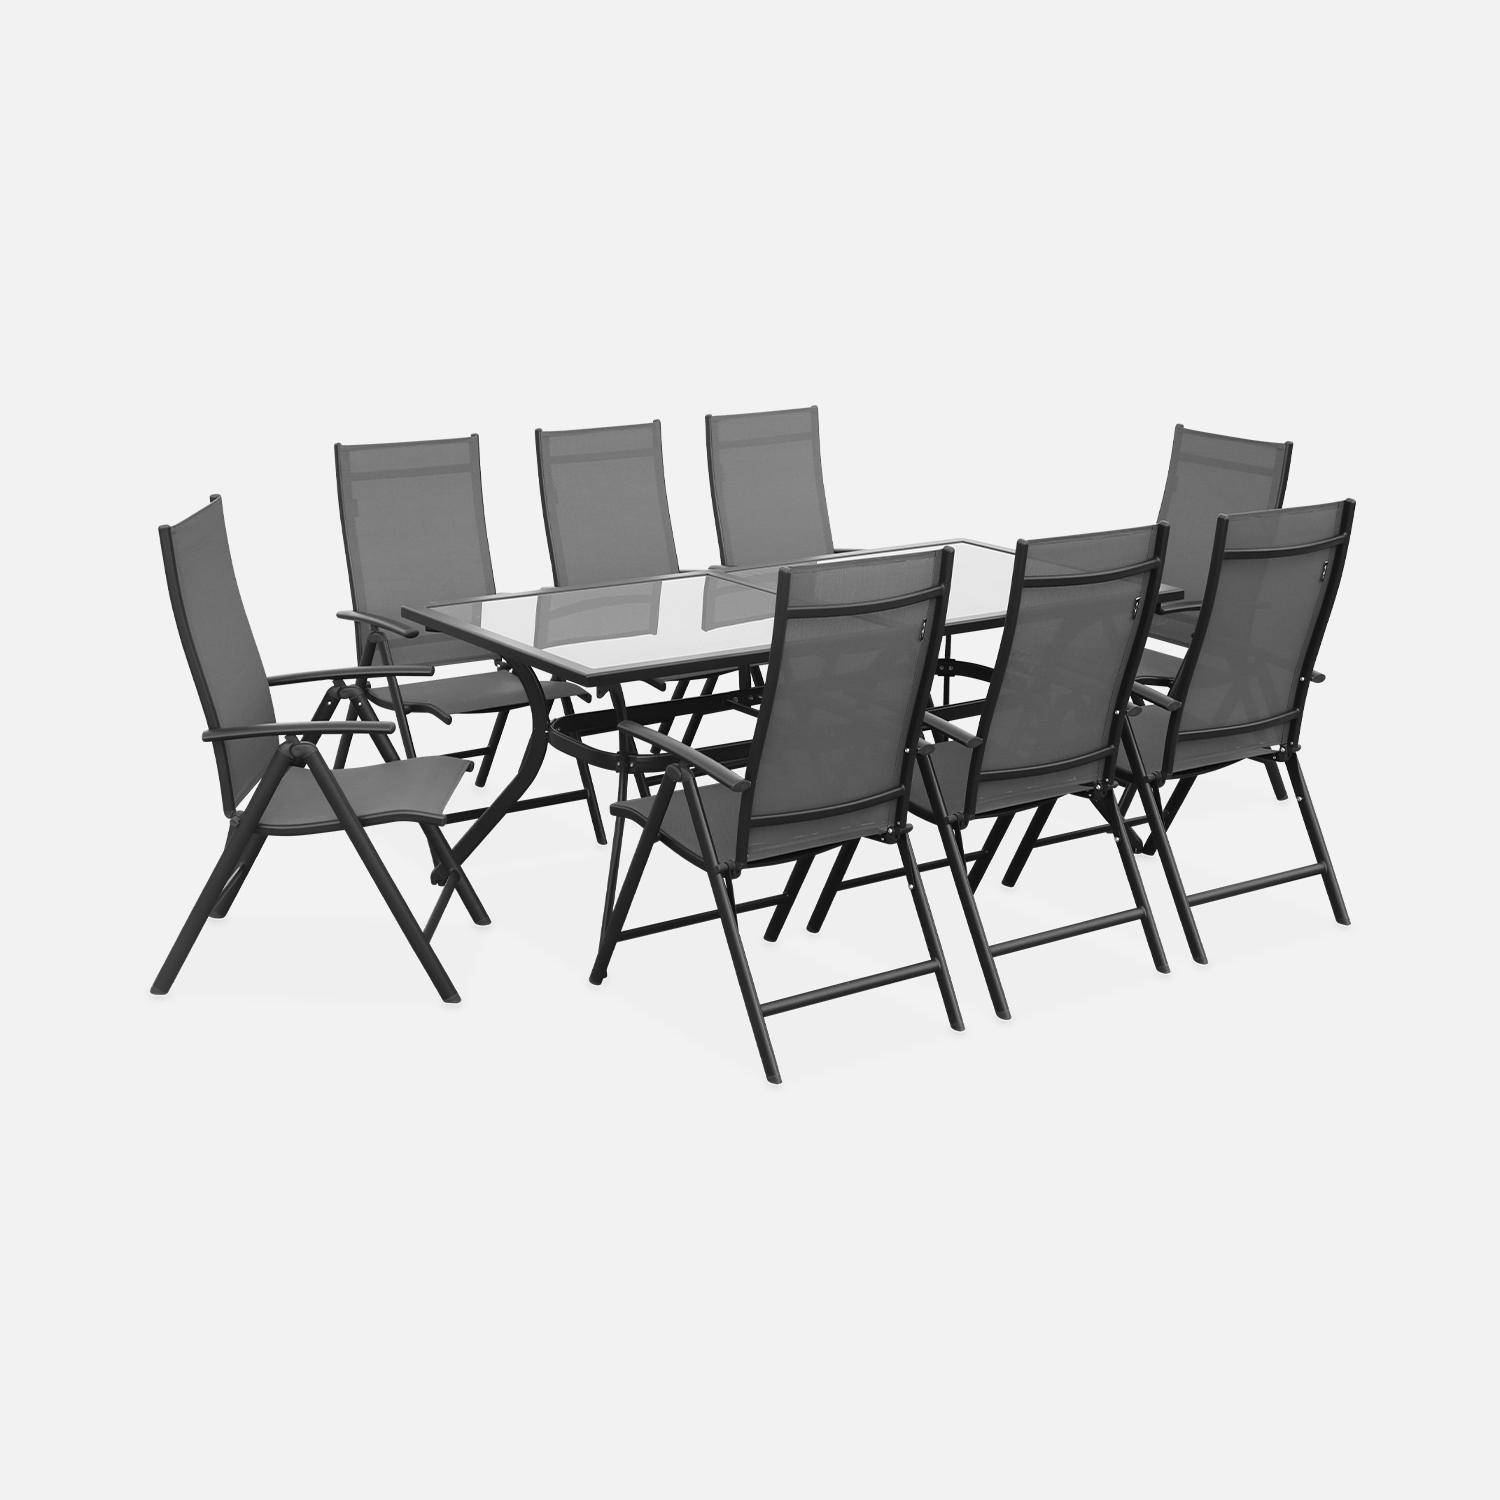 Gartengarnitur aus Aluminium und Textilene - Naevia - Grau, Anthrazit - 8 Sitze - 1 großer rechteckiger Tisch, 8 Klappstühle Photo5